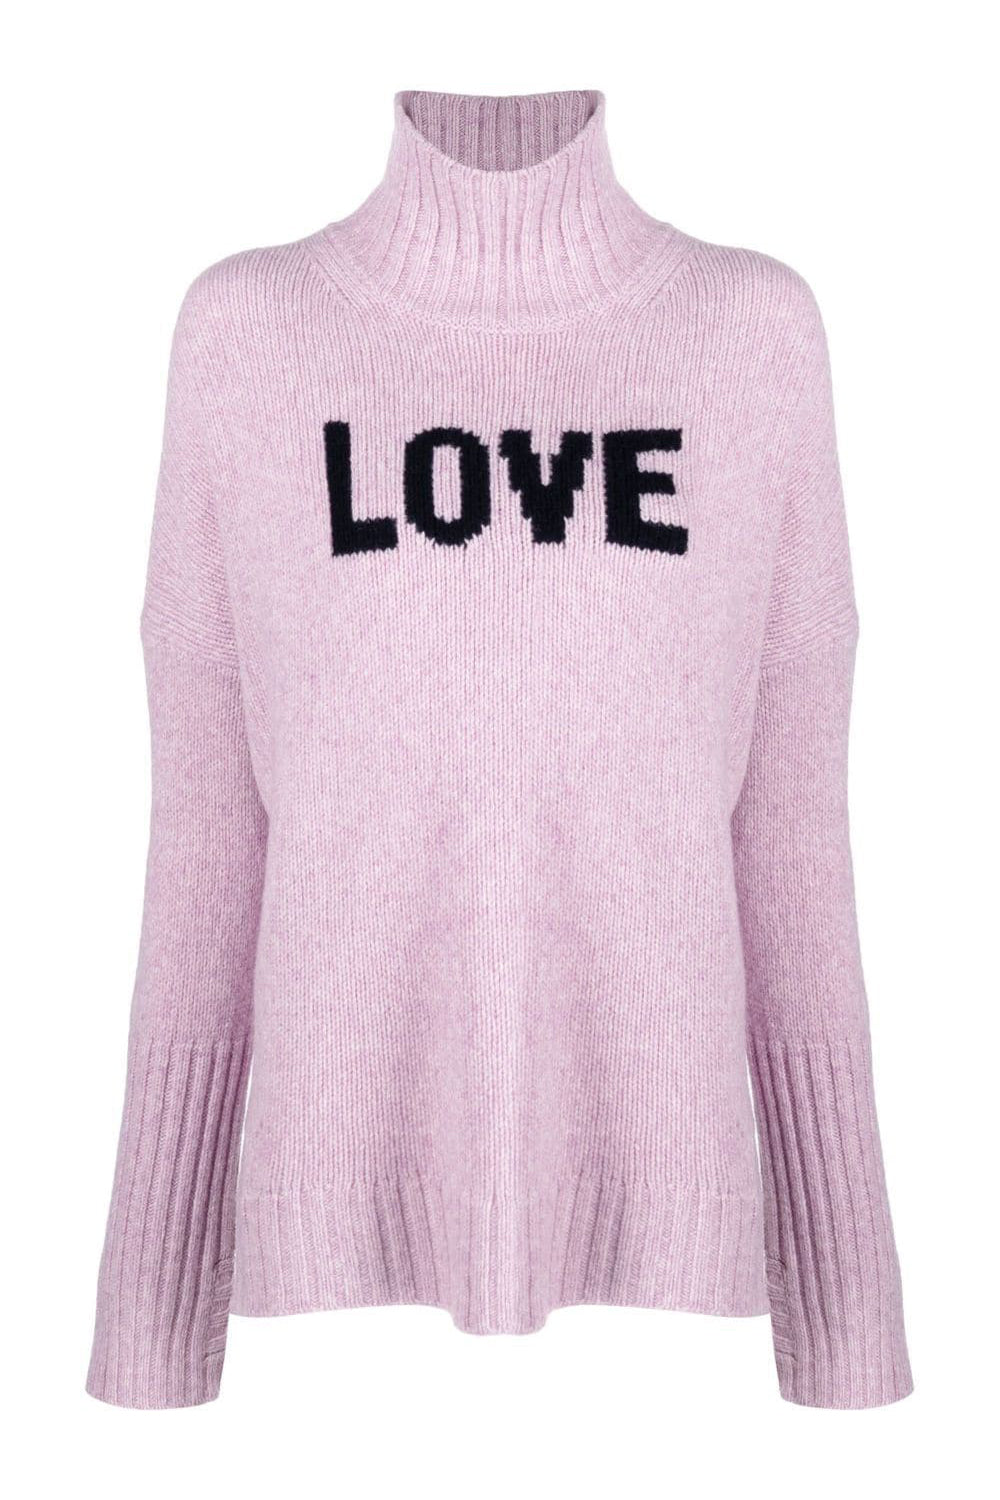 LOVE merino wool jumper, lilac